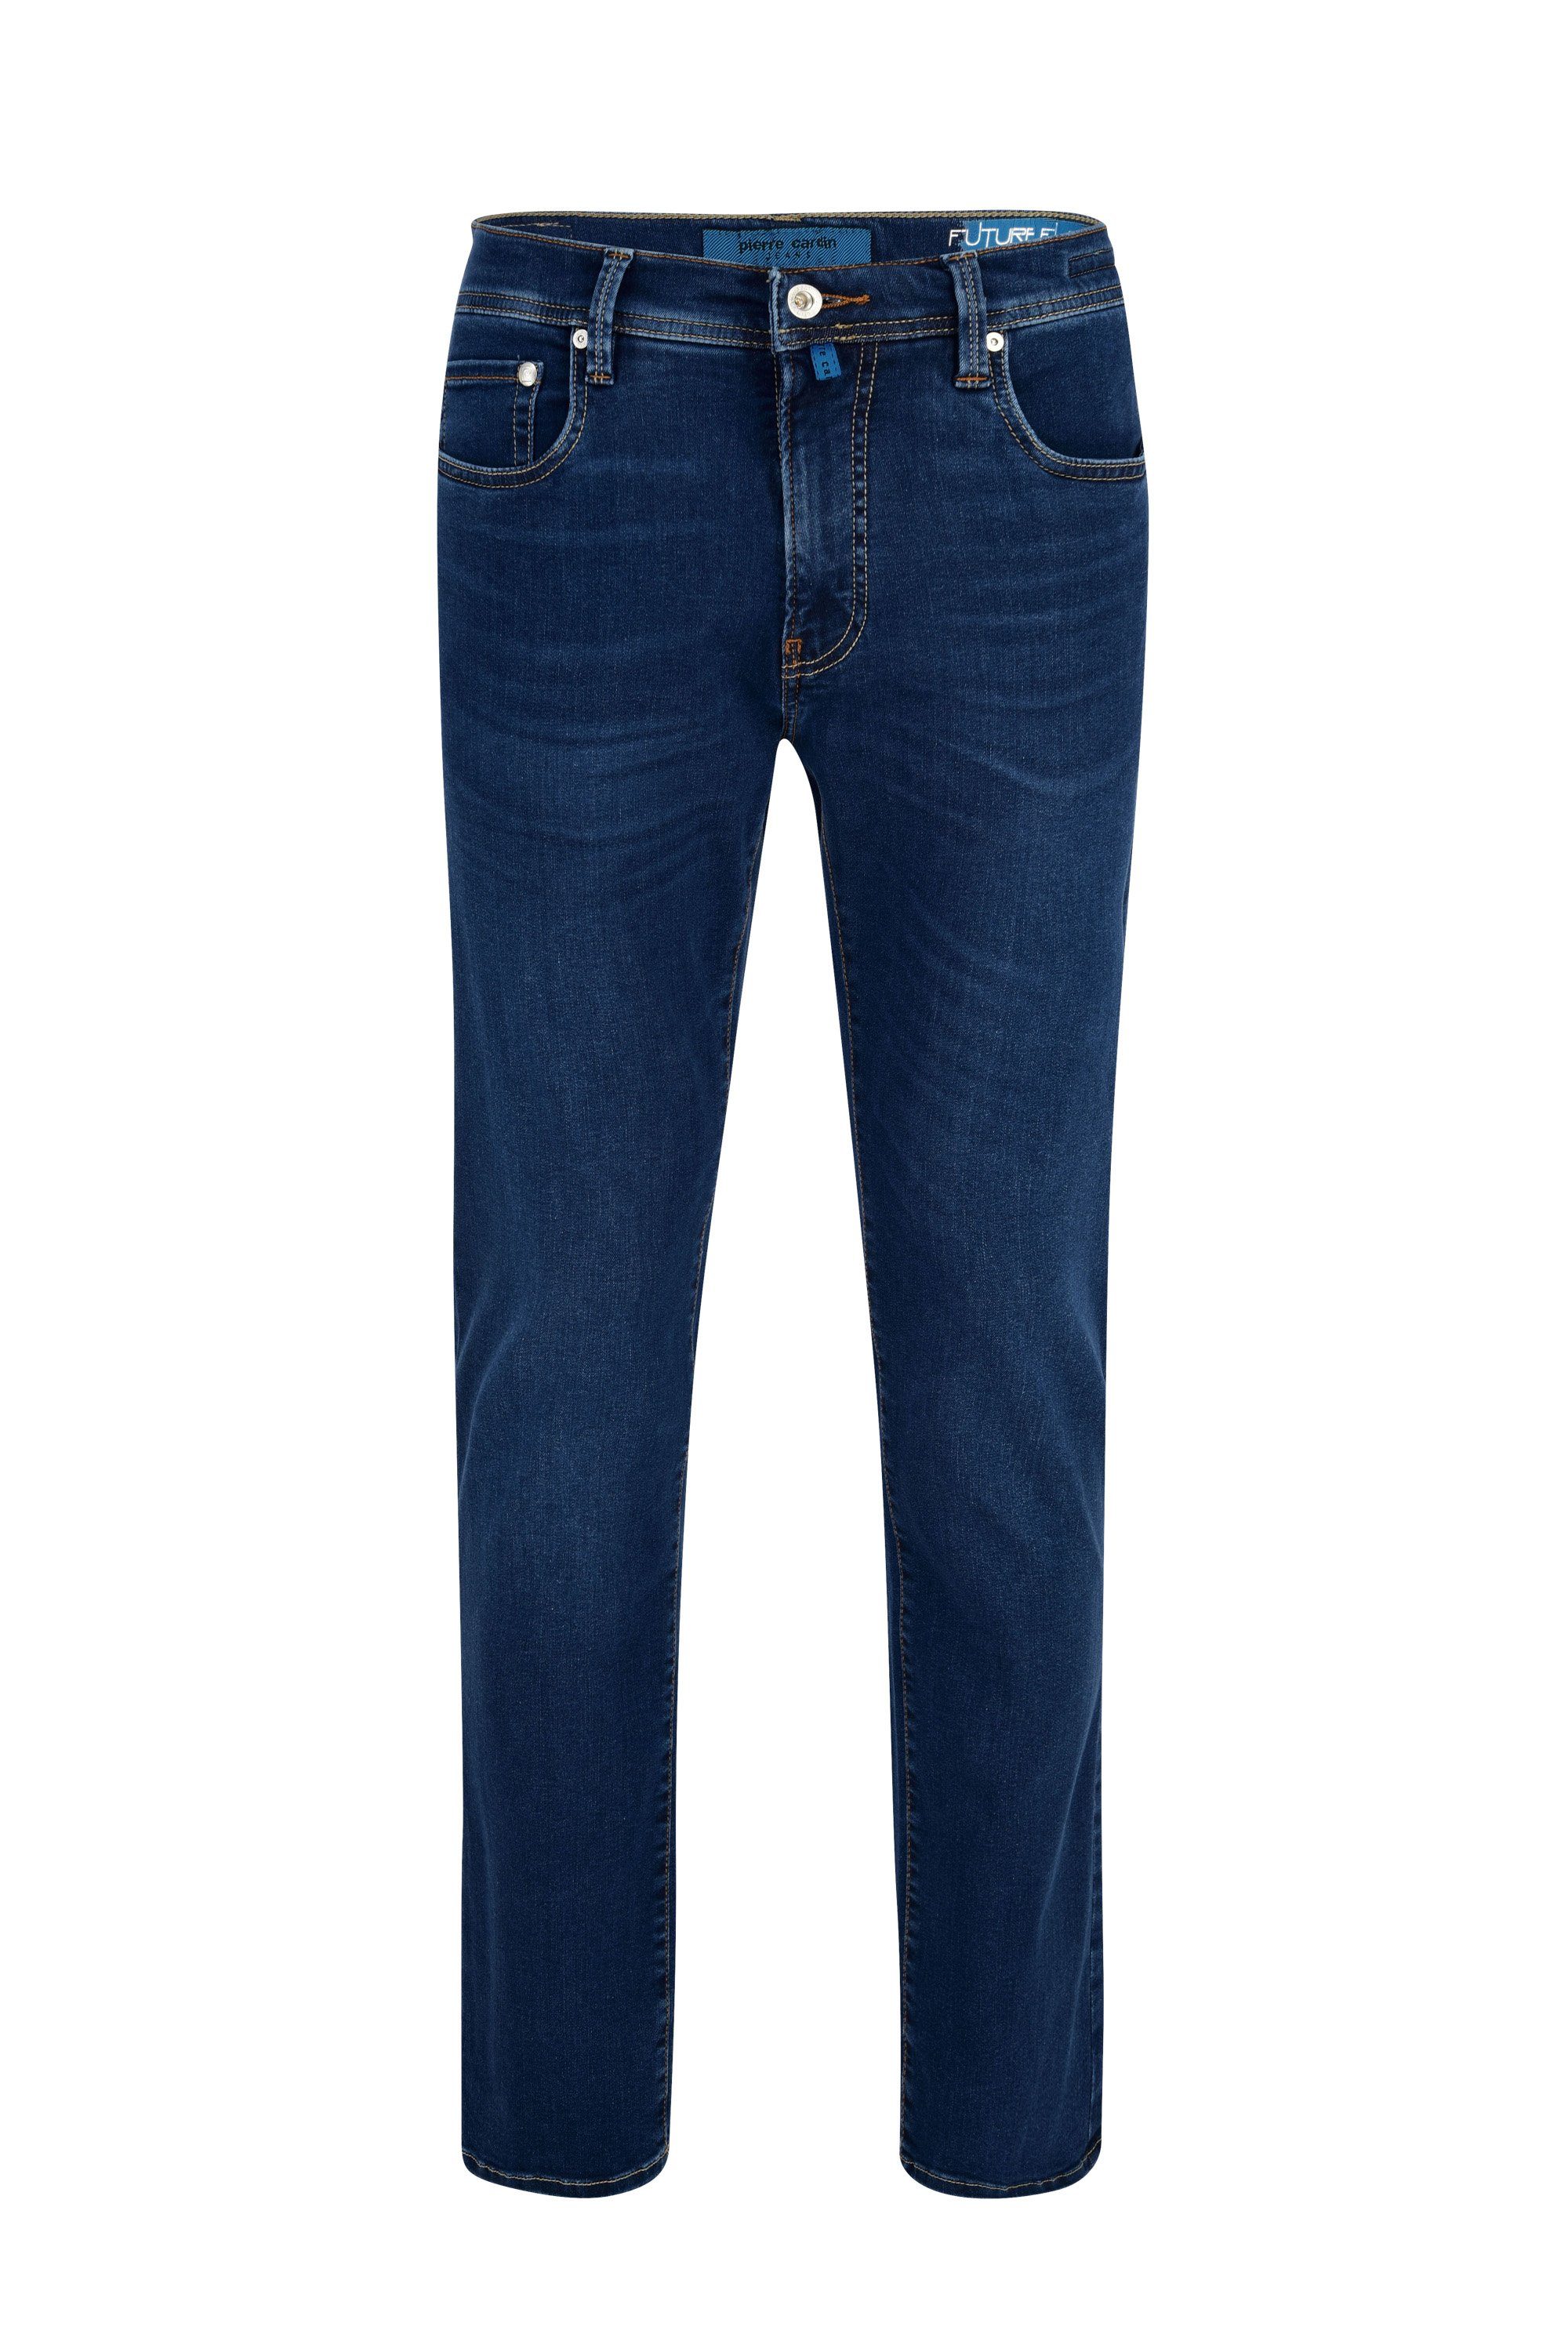 Pierre Cardin 5-Pocket-Jeans PIERRE CARDIN FUTUREFLEX LYON dark blue used buffies 3451 8880.51